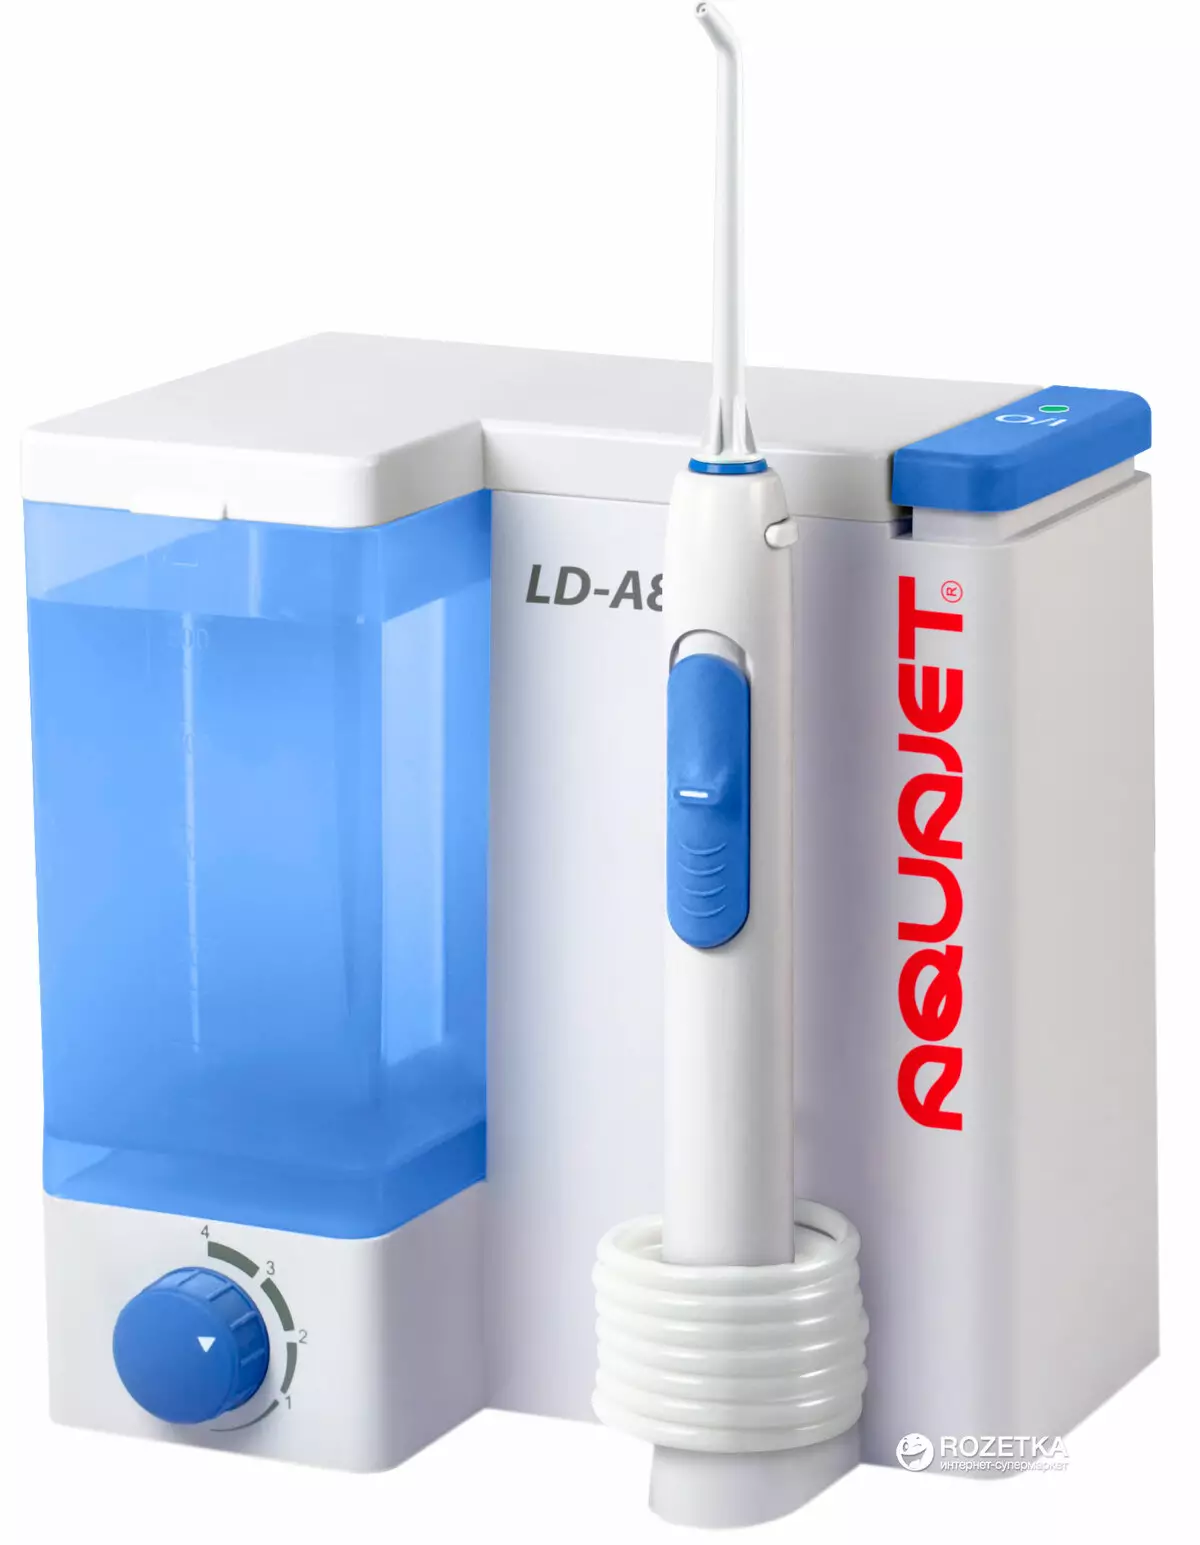 Ириванти Aquajet: LD-A7, LD-A8 и LD-M3 за усна шуплина, млазници за бело преносливо наводнување за забите, прегледи на клиентите 23962_4